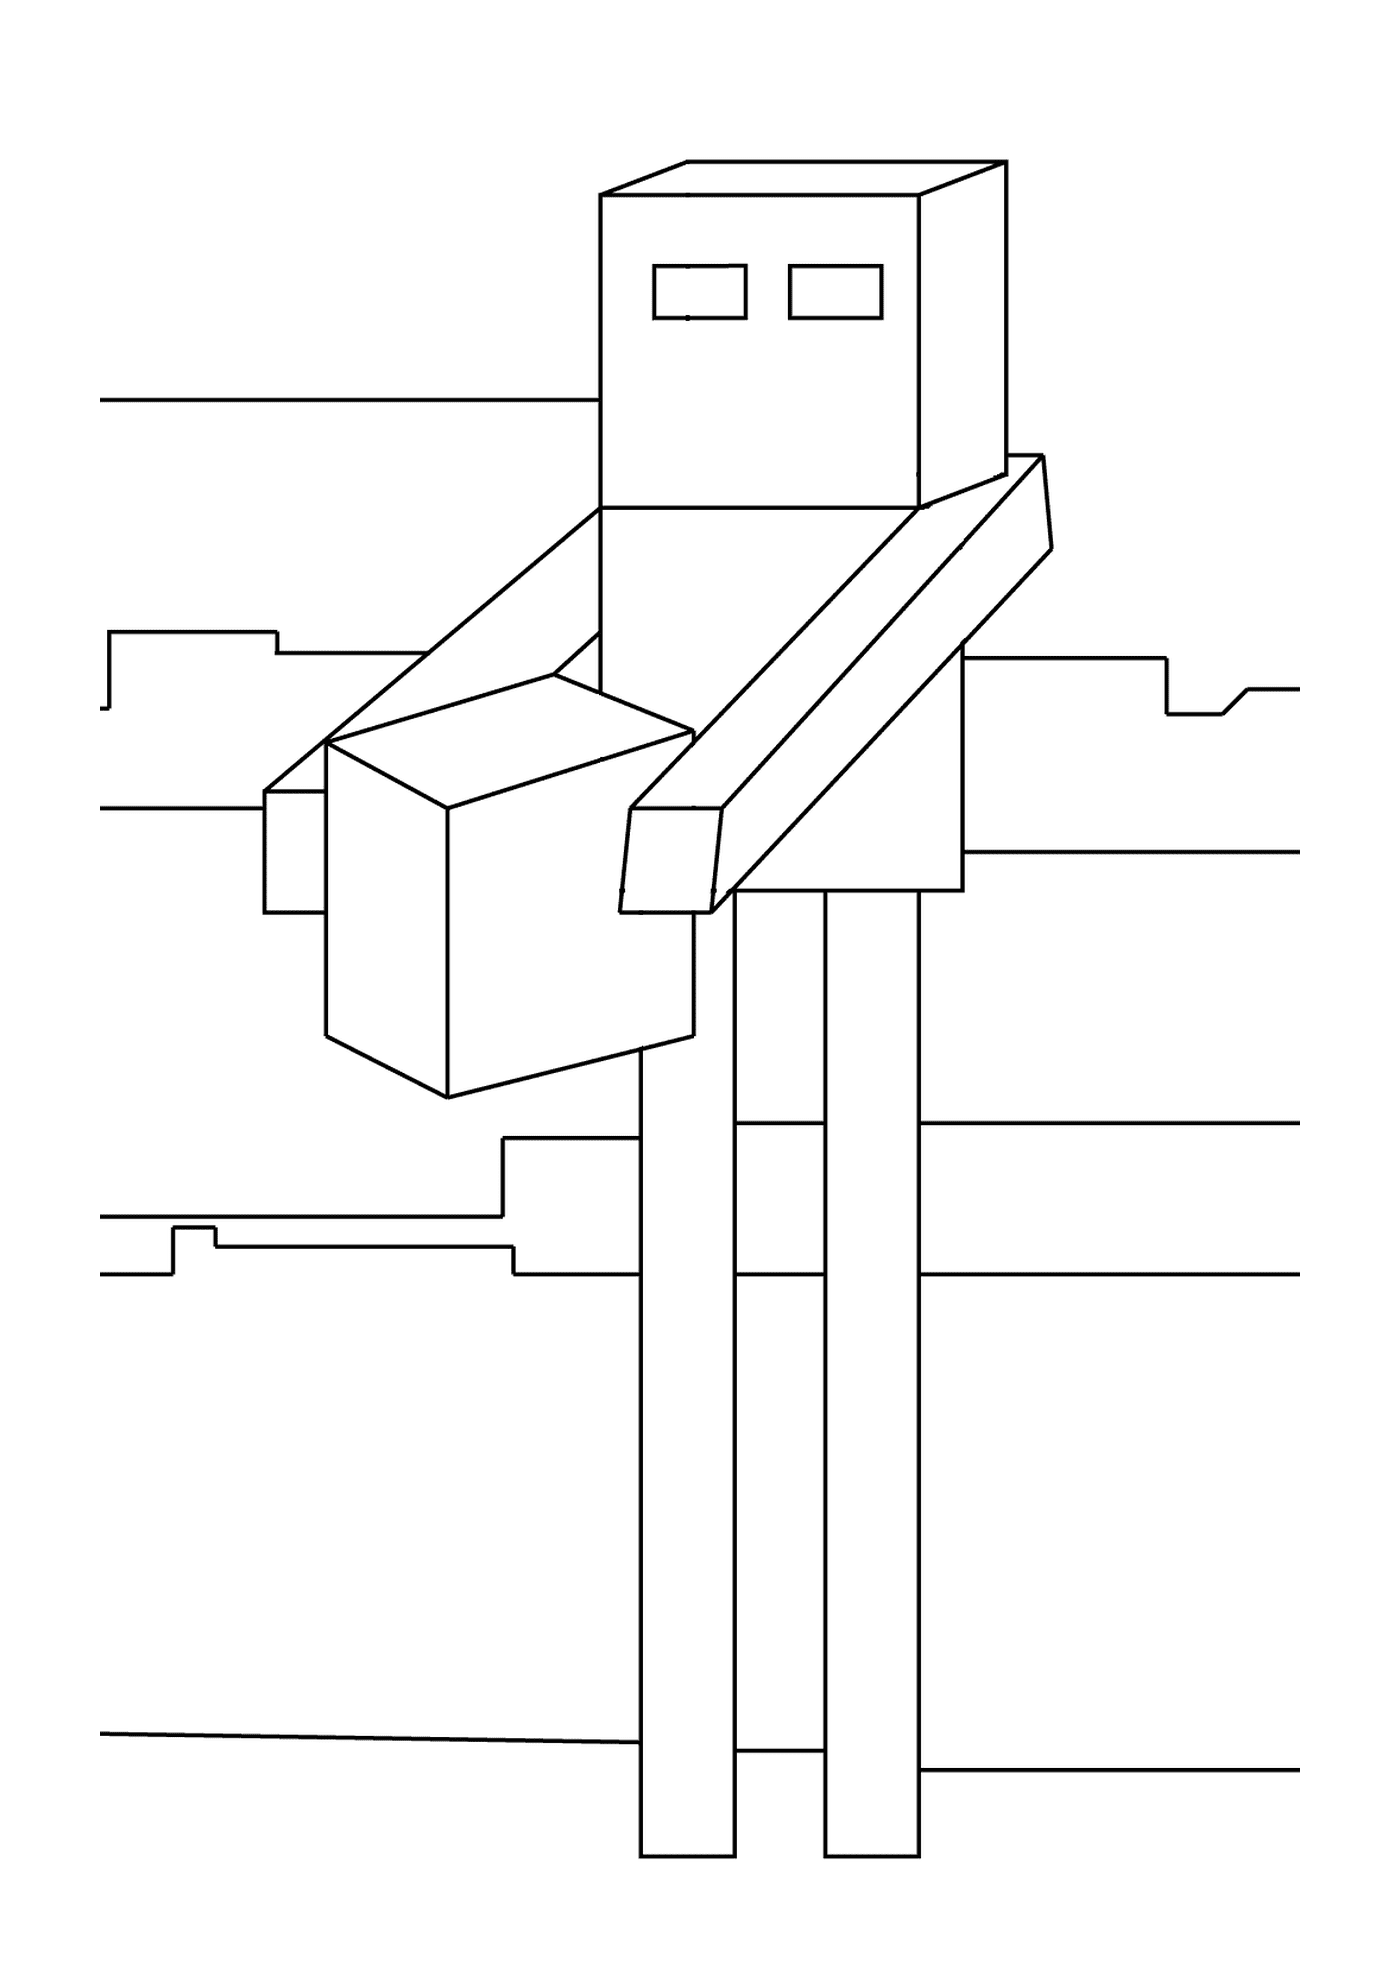  Резюме кубика на почте 